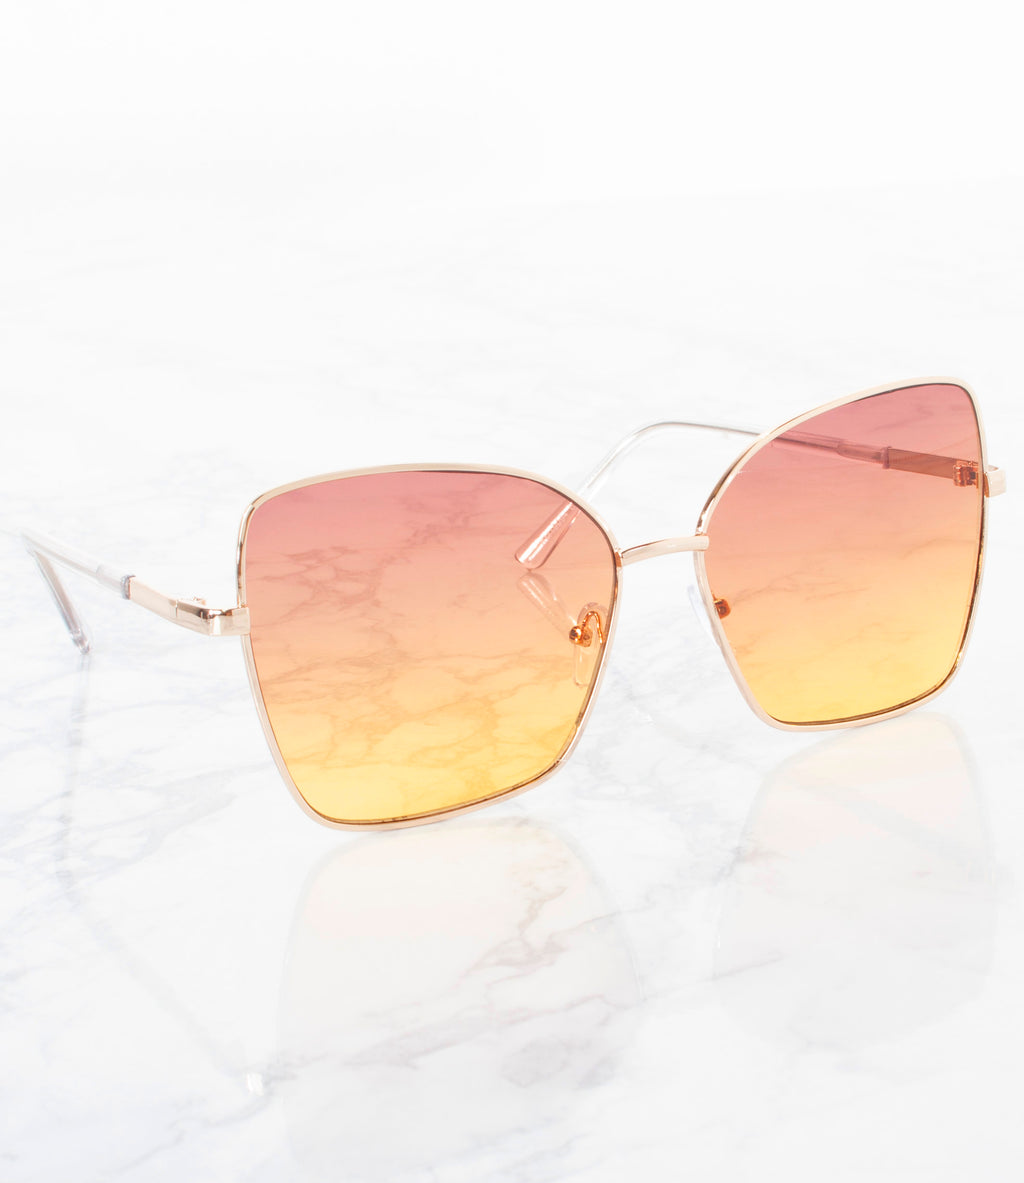 Wholesale Single Color Sunglasses - M19294AP-Gold/Purple Combo - Pack of 6